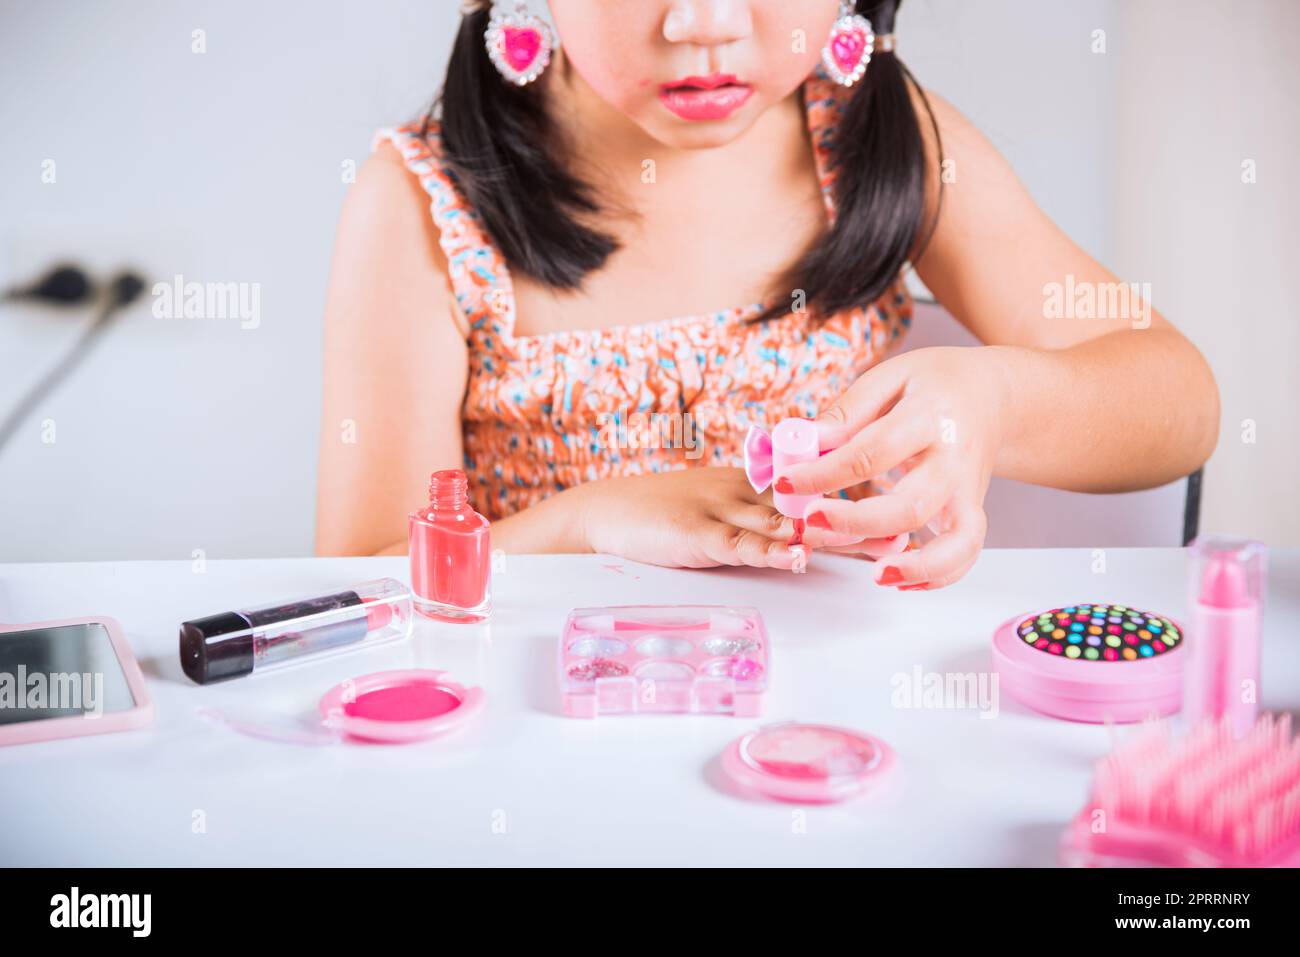 Ein kleines Mädchen, das Make-up macht, taucht eine Bürste in die Flasche, um Nägel zu malen, Polieren, rote Nagellackierung, sich selbst. Stockfoto